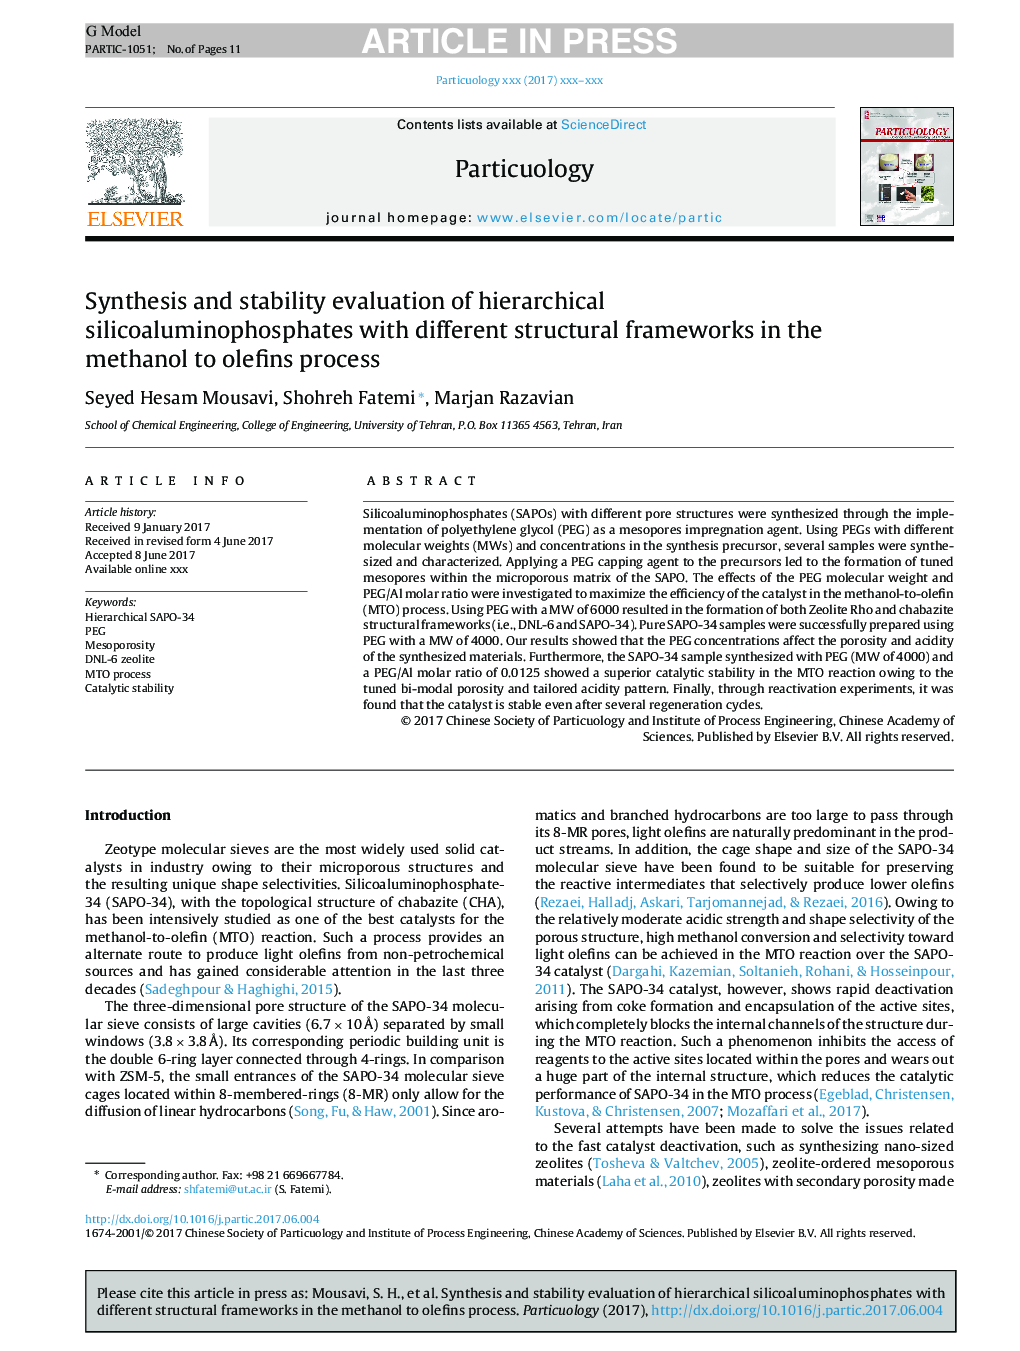 سنتز و ارزیابی ثبات سیلیکا آلومینوفسفات سلولی با ساختارهای ساختاری مختلف در فرآیند متانول به الفین 